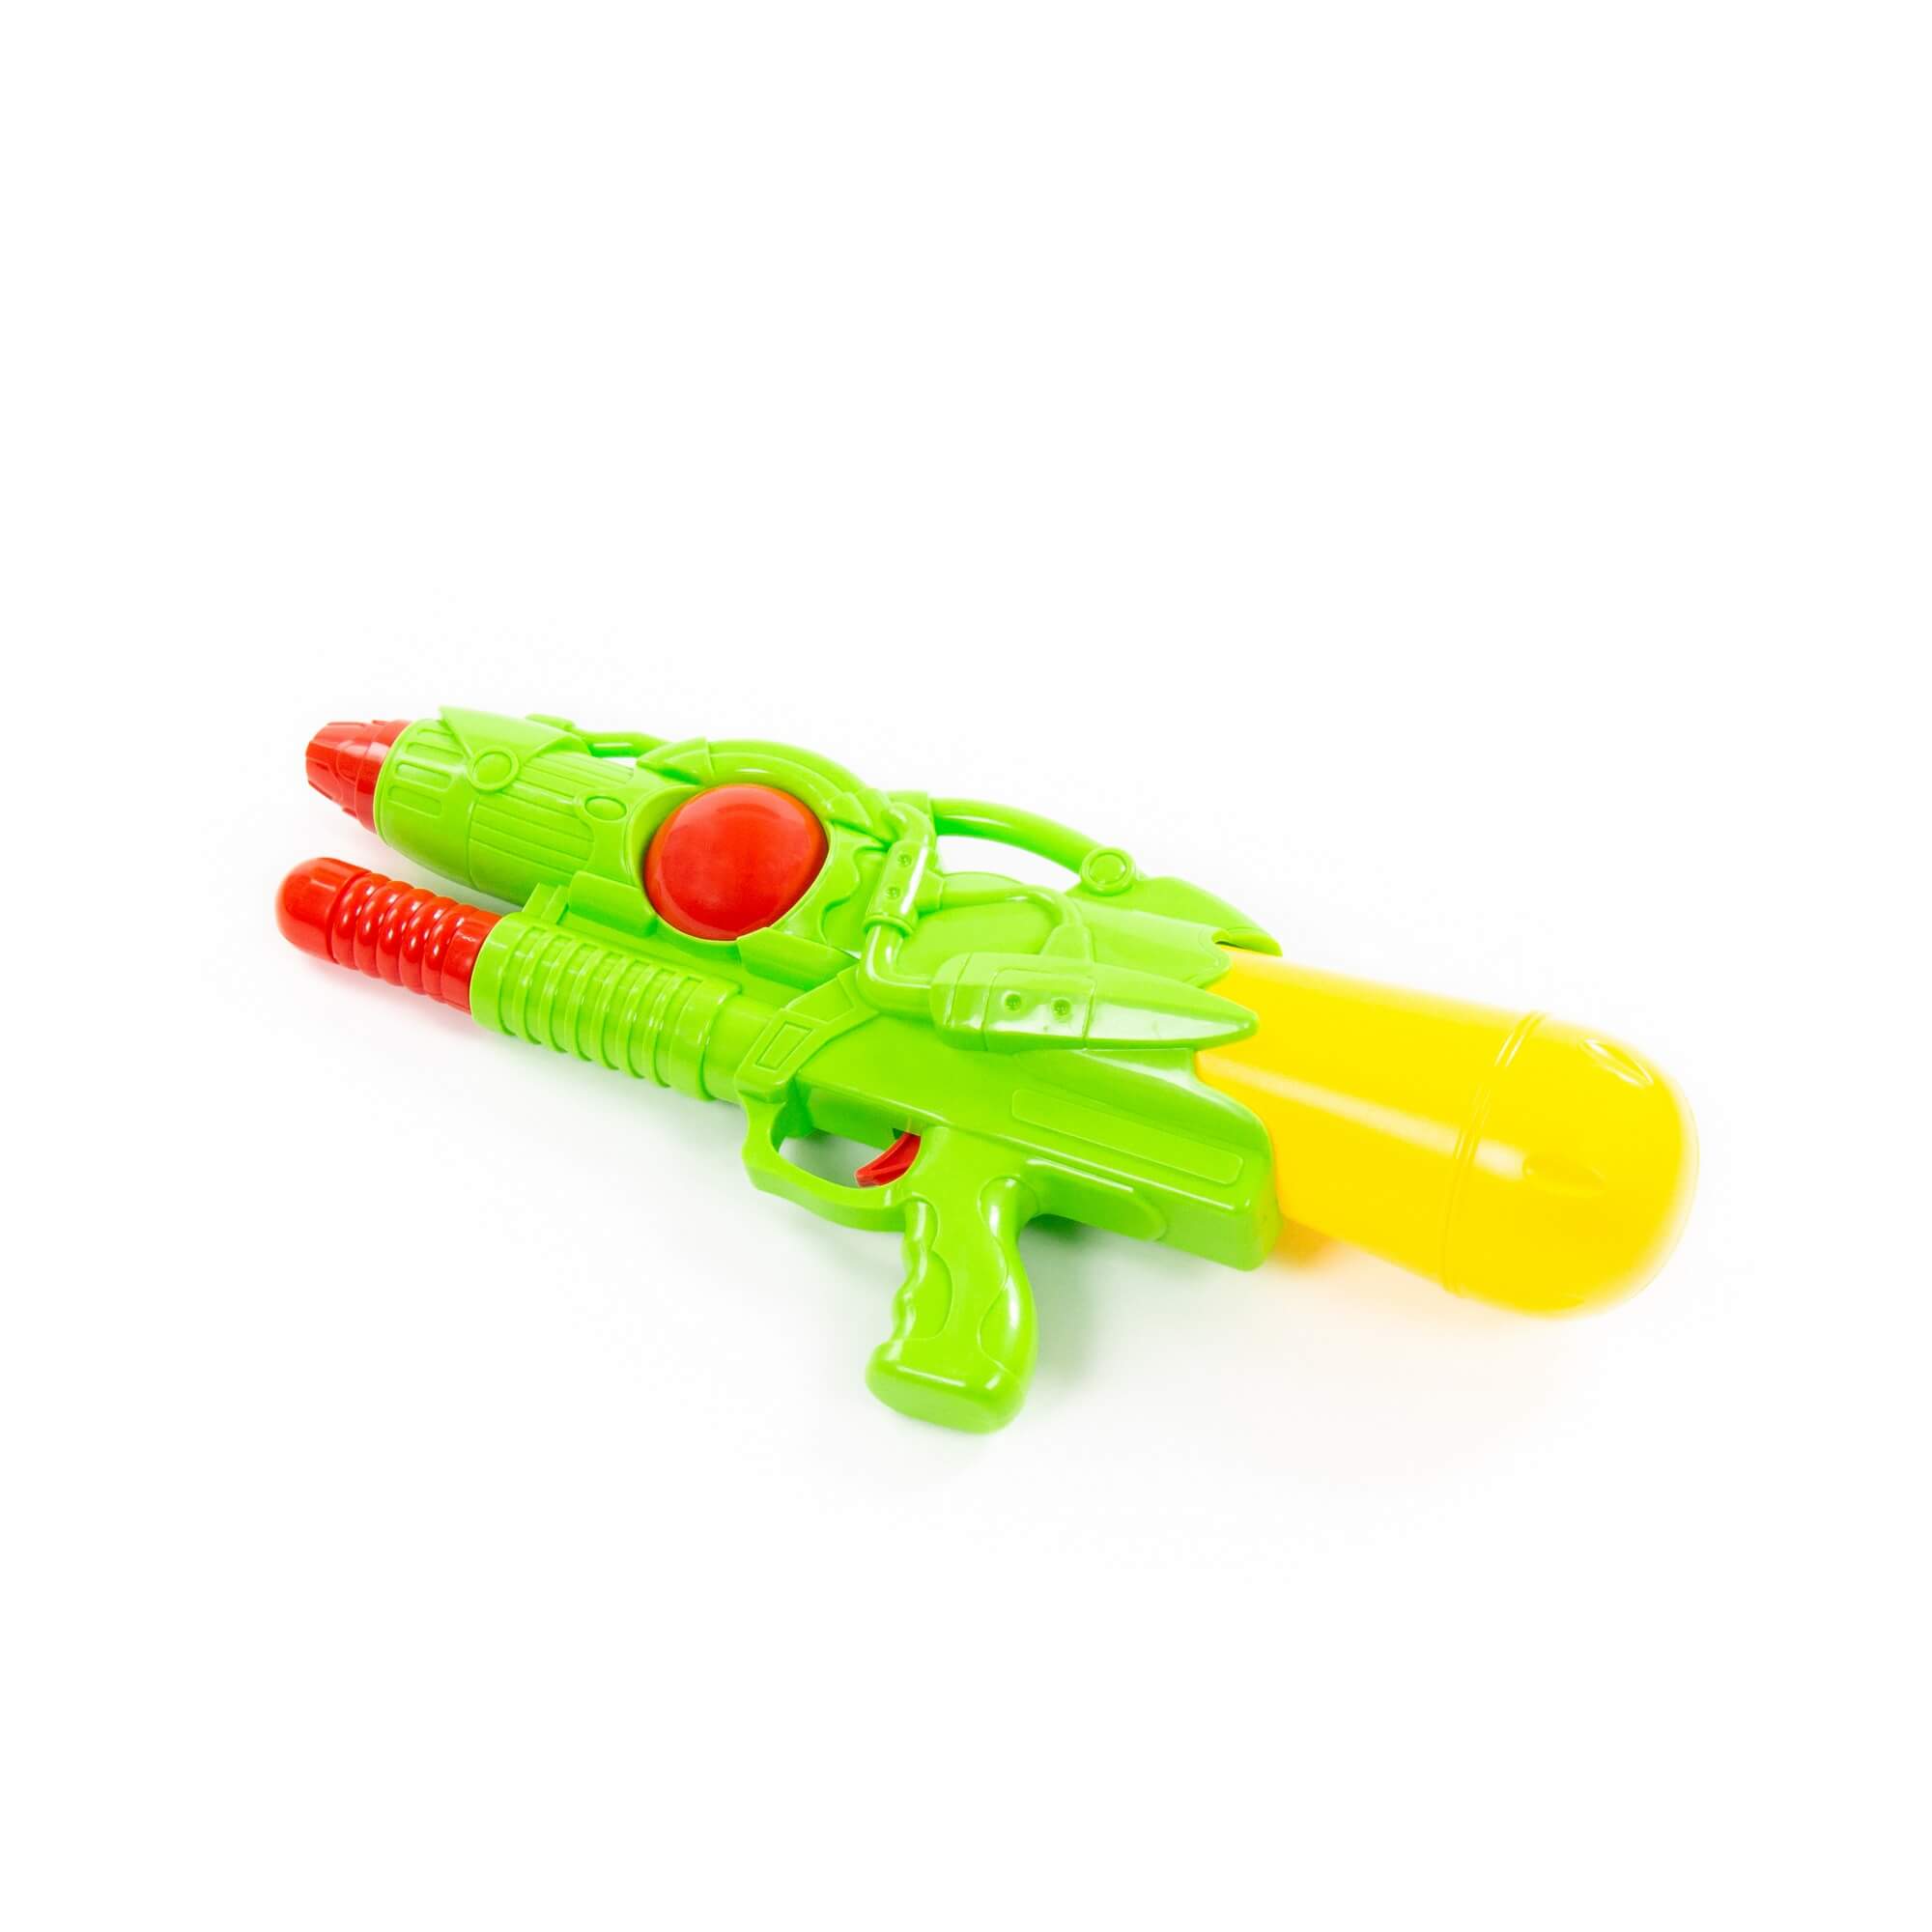 Водный пистолет игрушечный Полесье Аквадрайв №4 81520 плс водный пистолет полесье аквадрайв 8 36 см